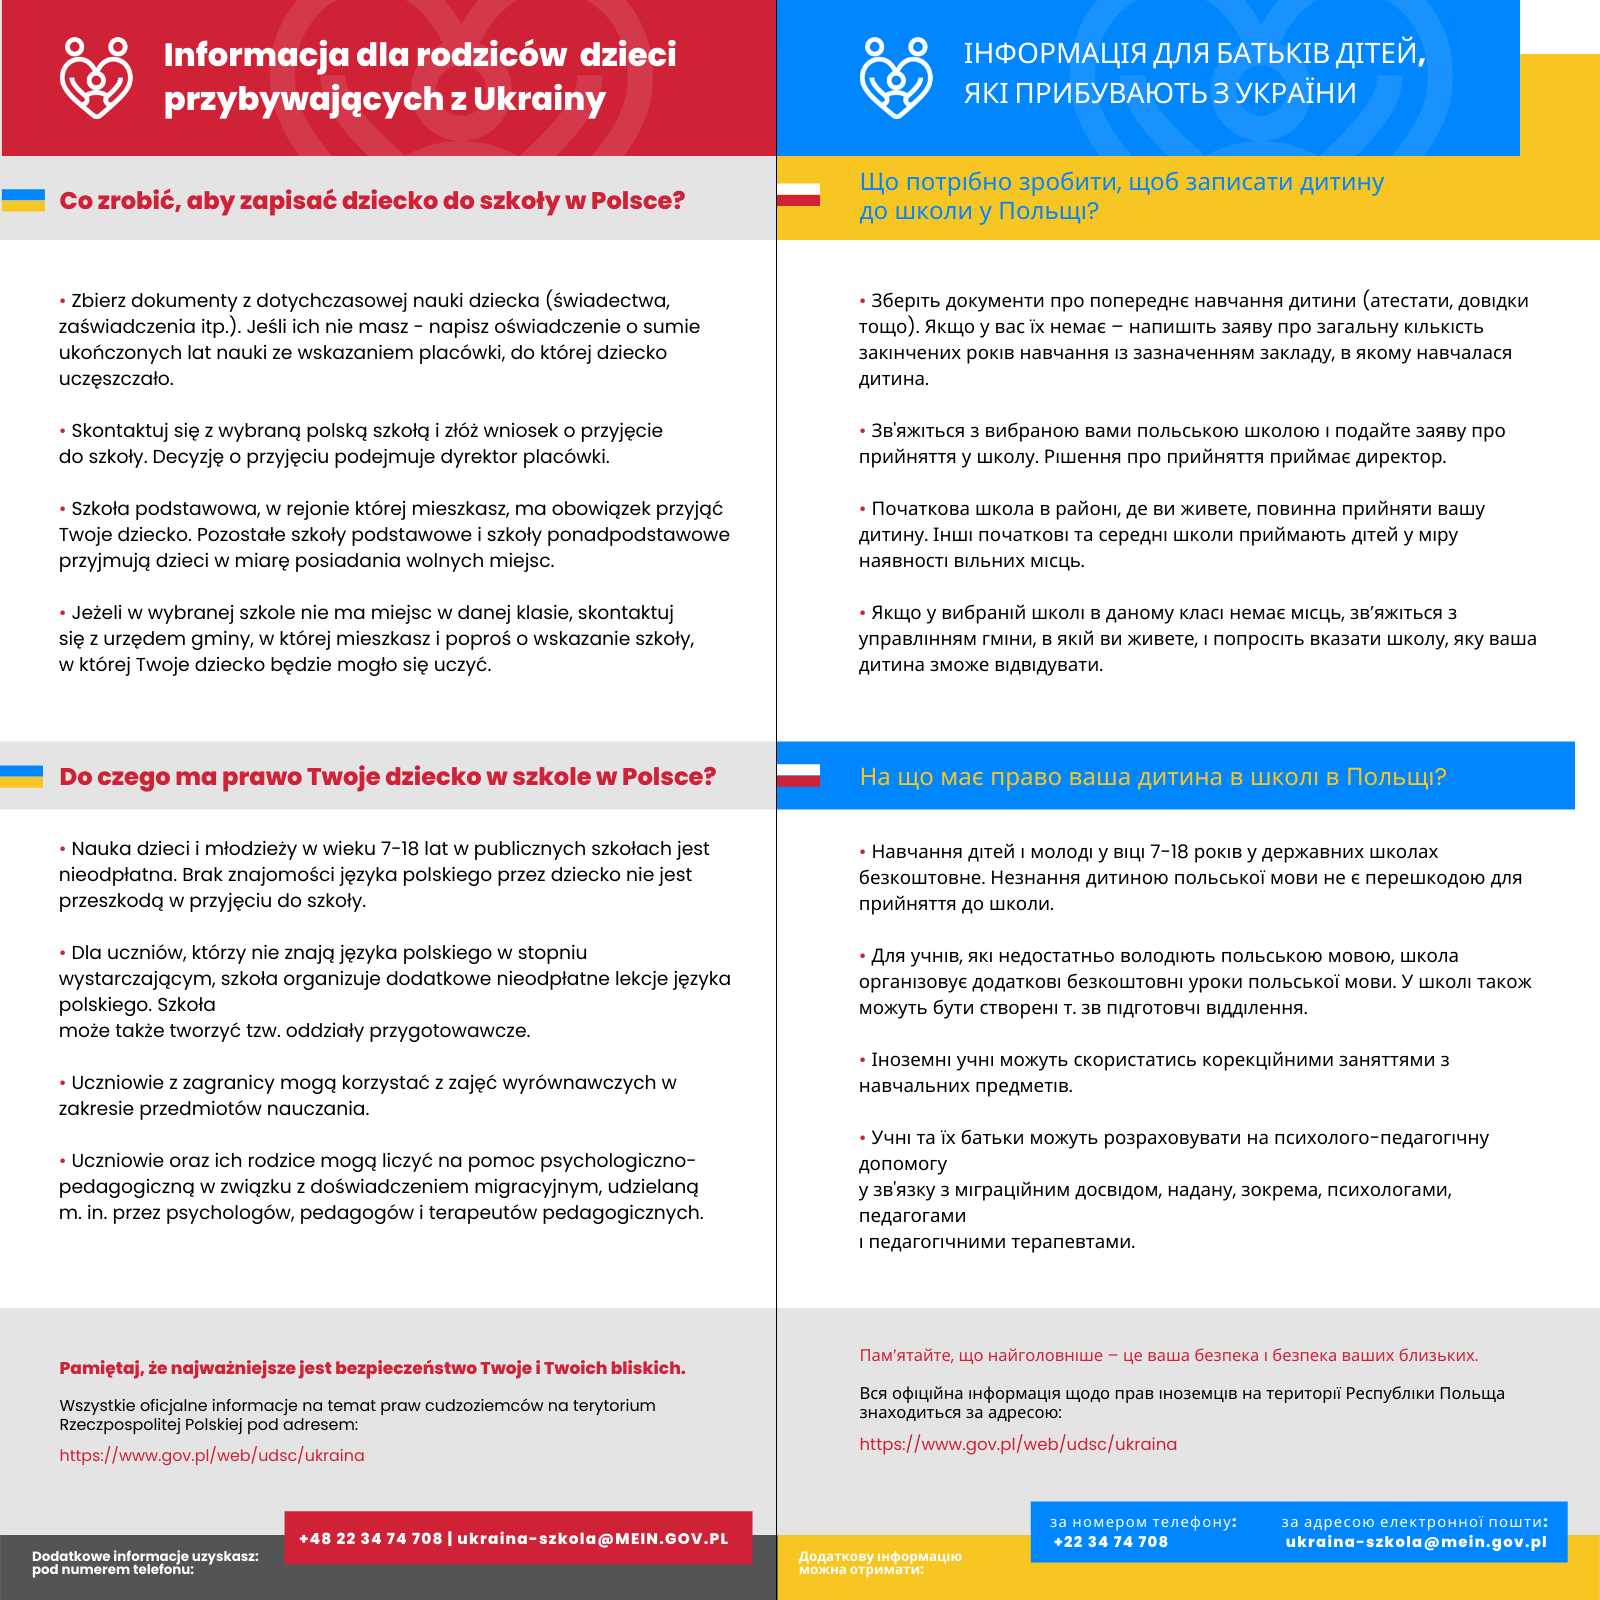 Informacja dla rodziców przybywających z Ukrainy